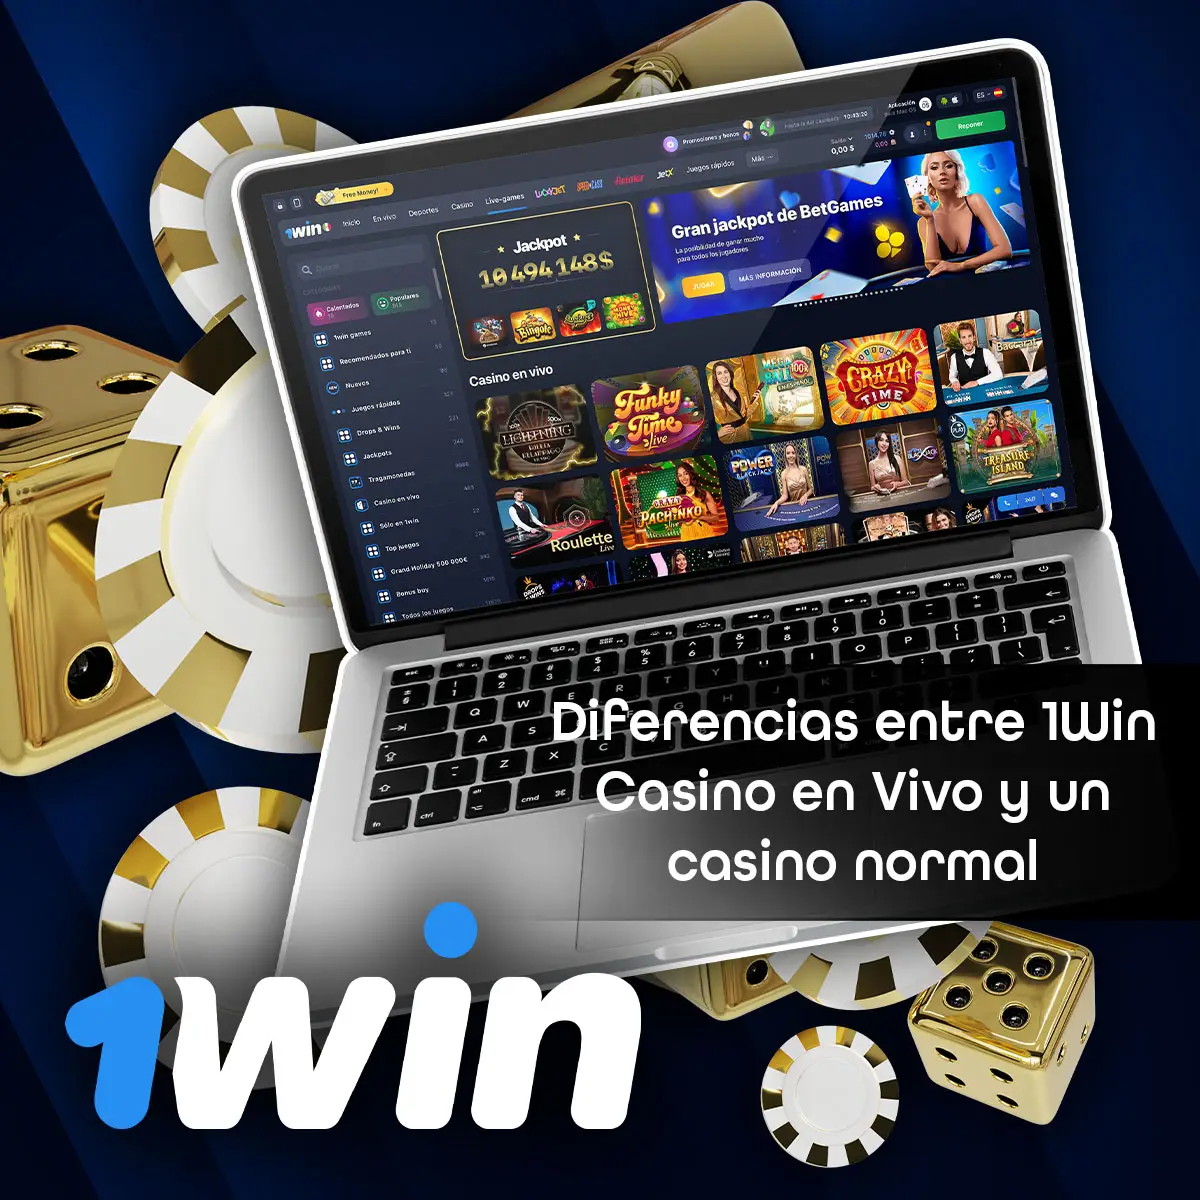 Comparación entre el casino en vivo y el casino normal en la aplicación móvil 1Win